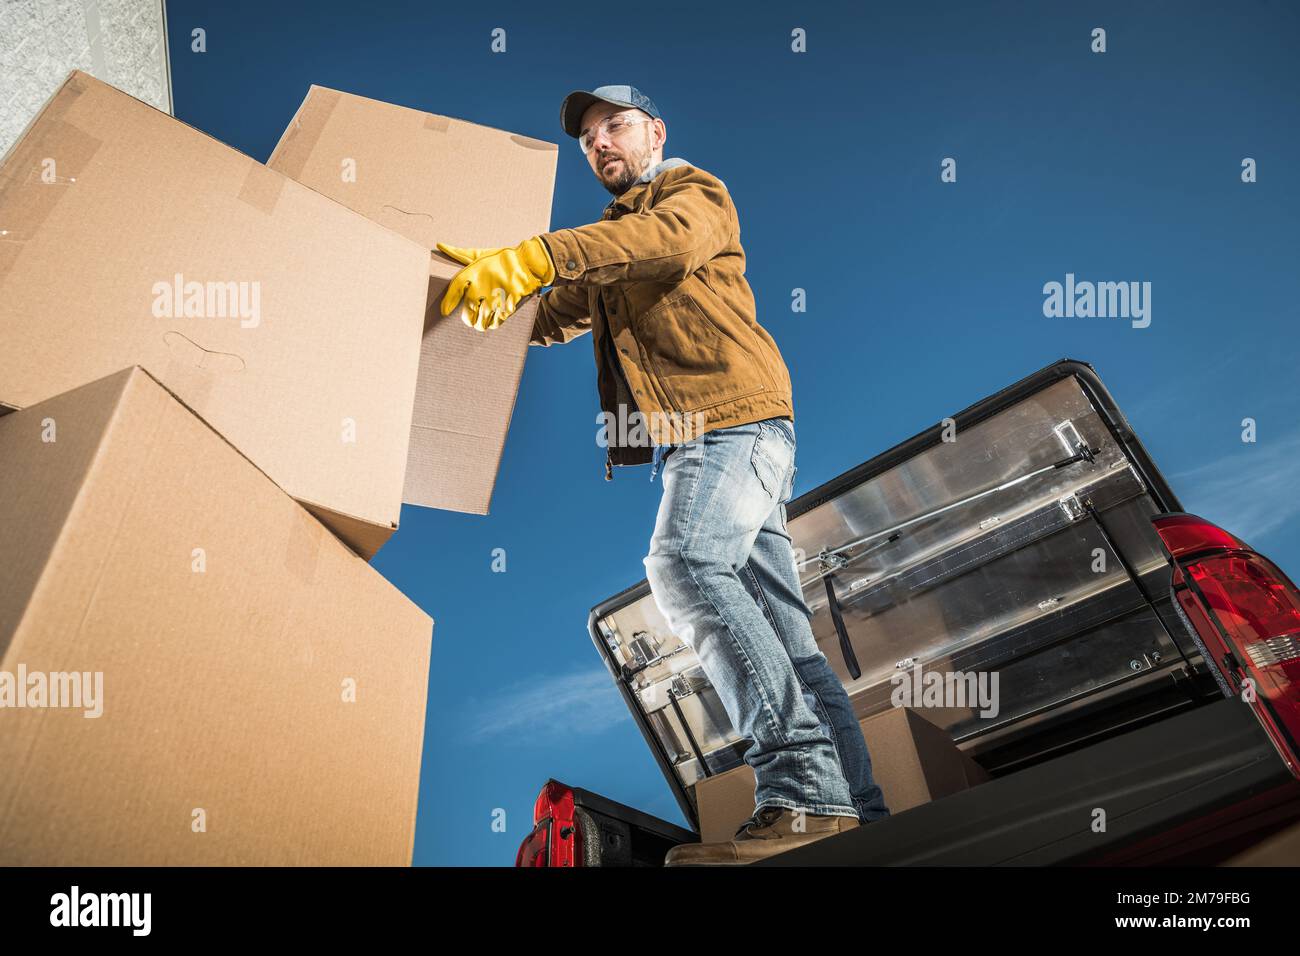 Travailleur de la compagnie de déménagement chargeant de grandes boîtes en carton sur la caisse de son camion de pick-up. Thème des services de déménagement. Banque D'Images